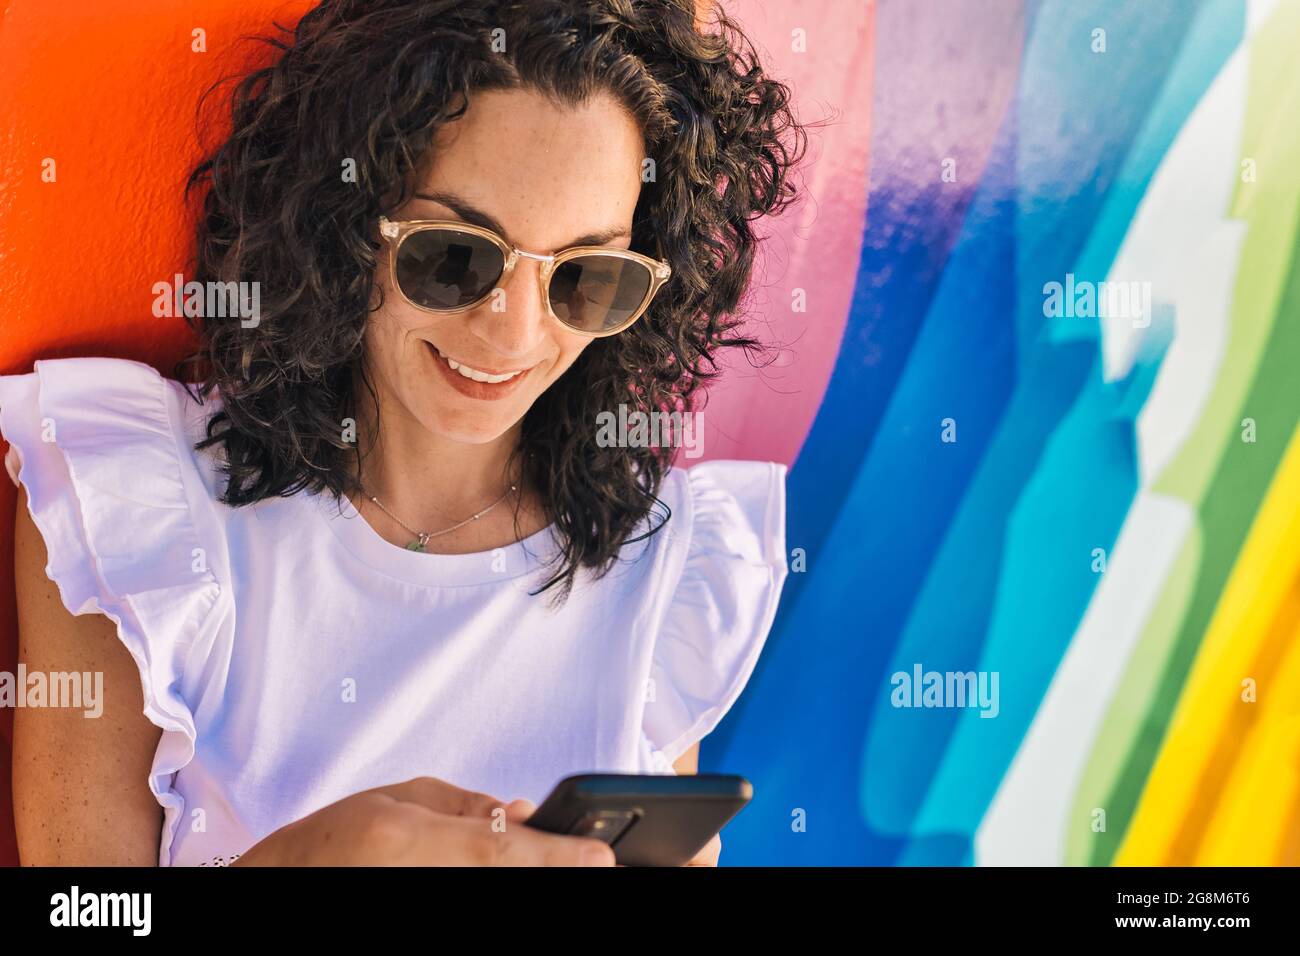 une jeune femme aux cheveux noirs bouclés a du plaisir à discuter avec son mobile assis sur un mur coloré dans la rue. Banque D'Images